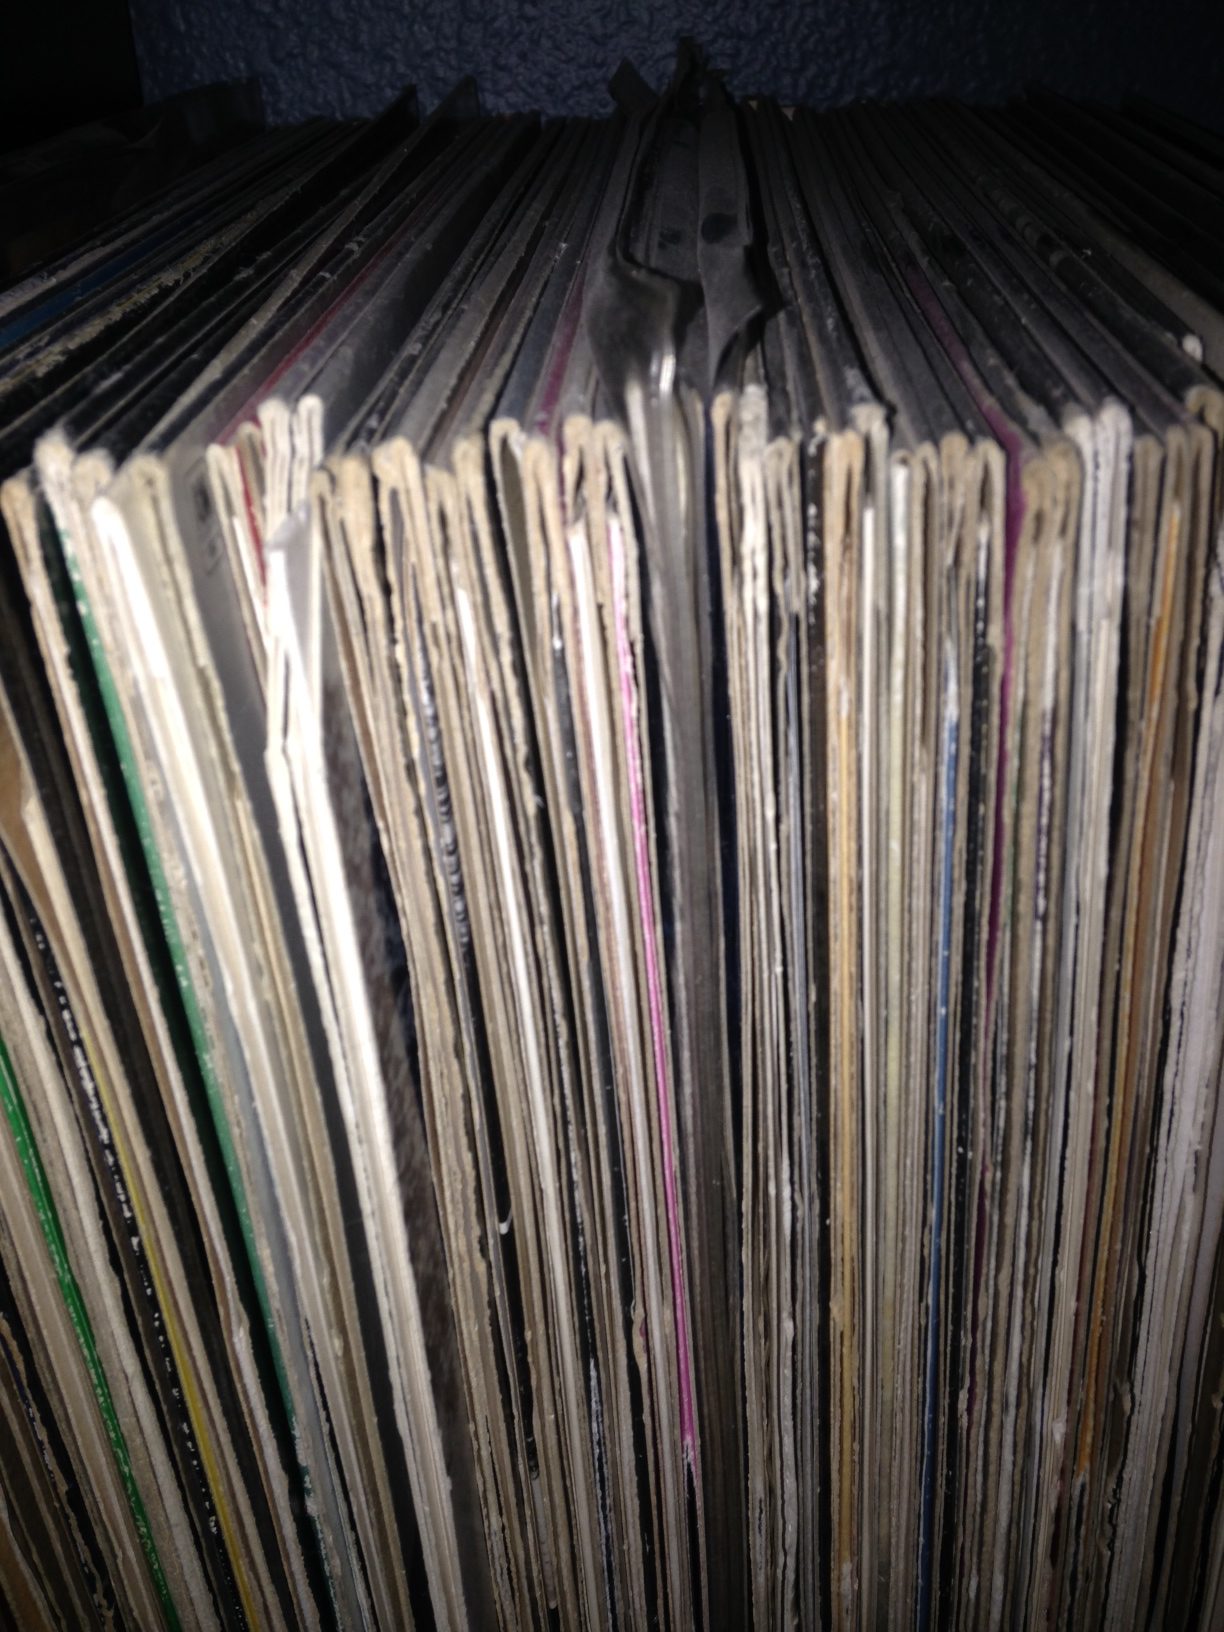 vinyl-LPs